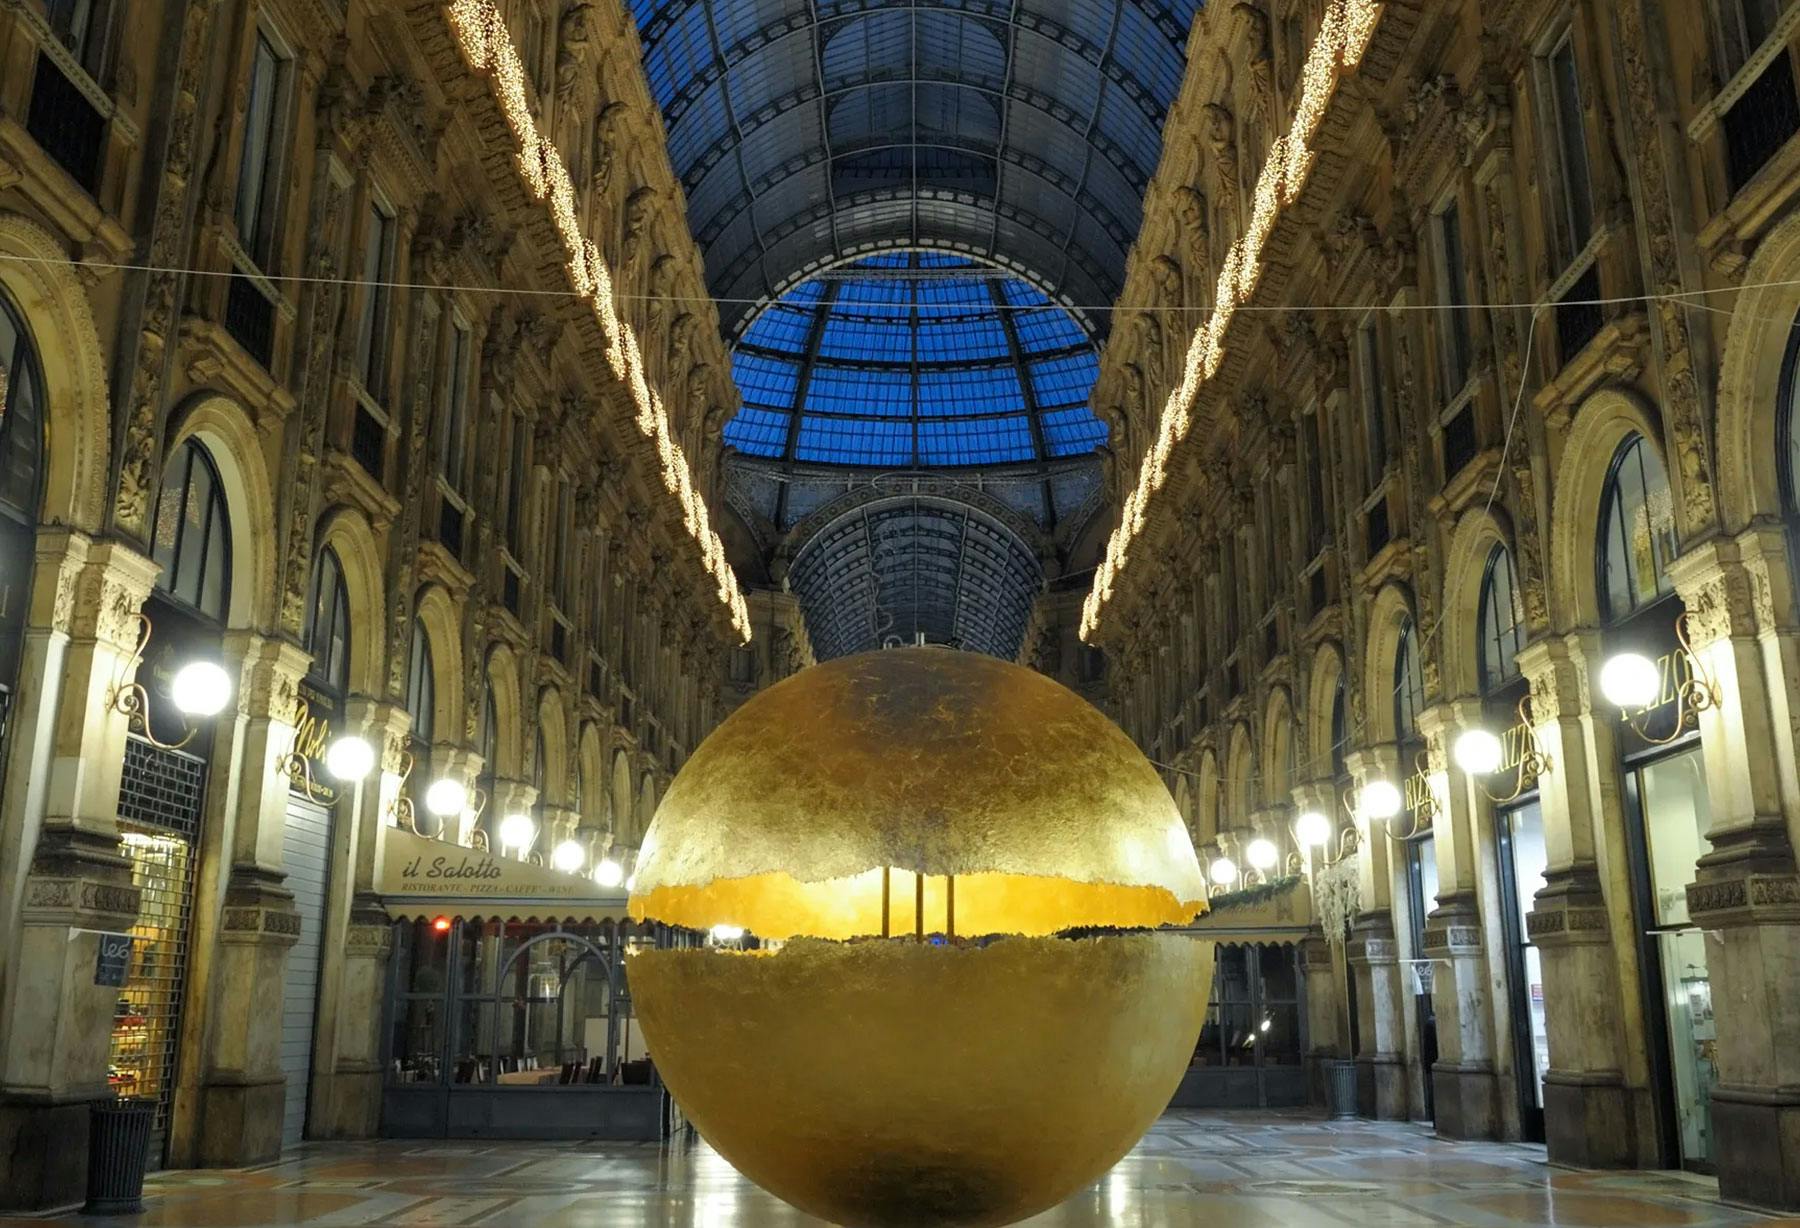 <p>Installation « PostKrisi » dans la Galleria Vittorio Emanuele à Milan : une grande sphère posée à même le sol, lumineuse et imposante, est entièrement recouverte en feuille d’or dans une composition qui allie la valeur du passé à la technologie actuelle.</p>
